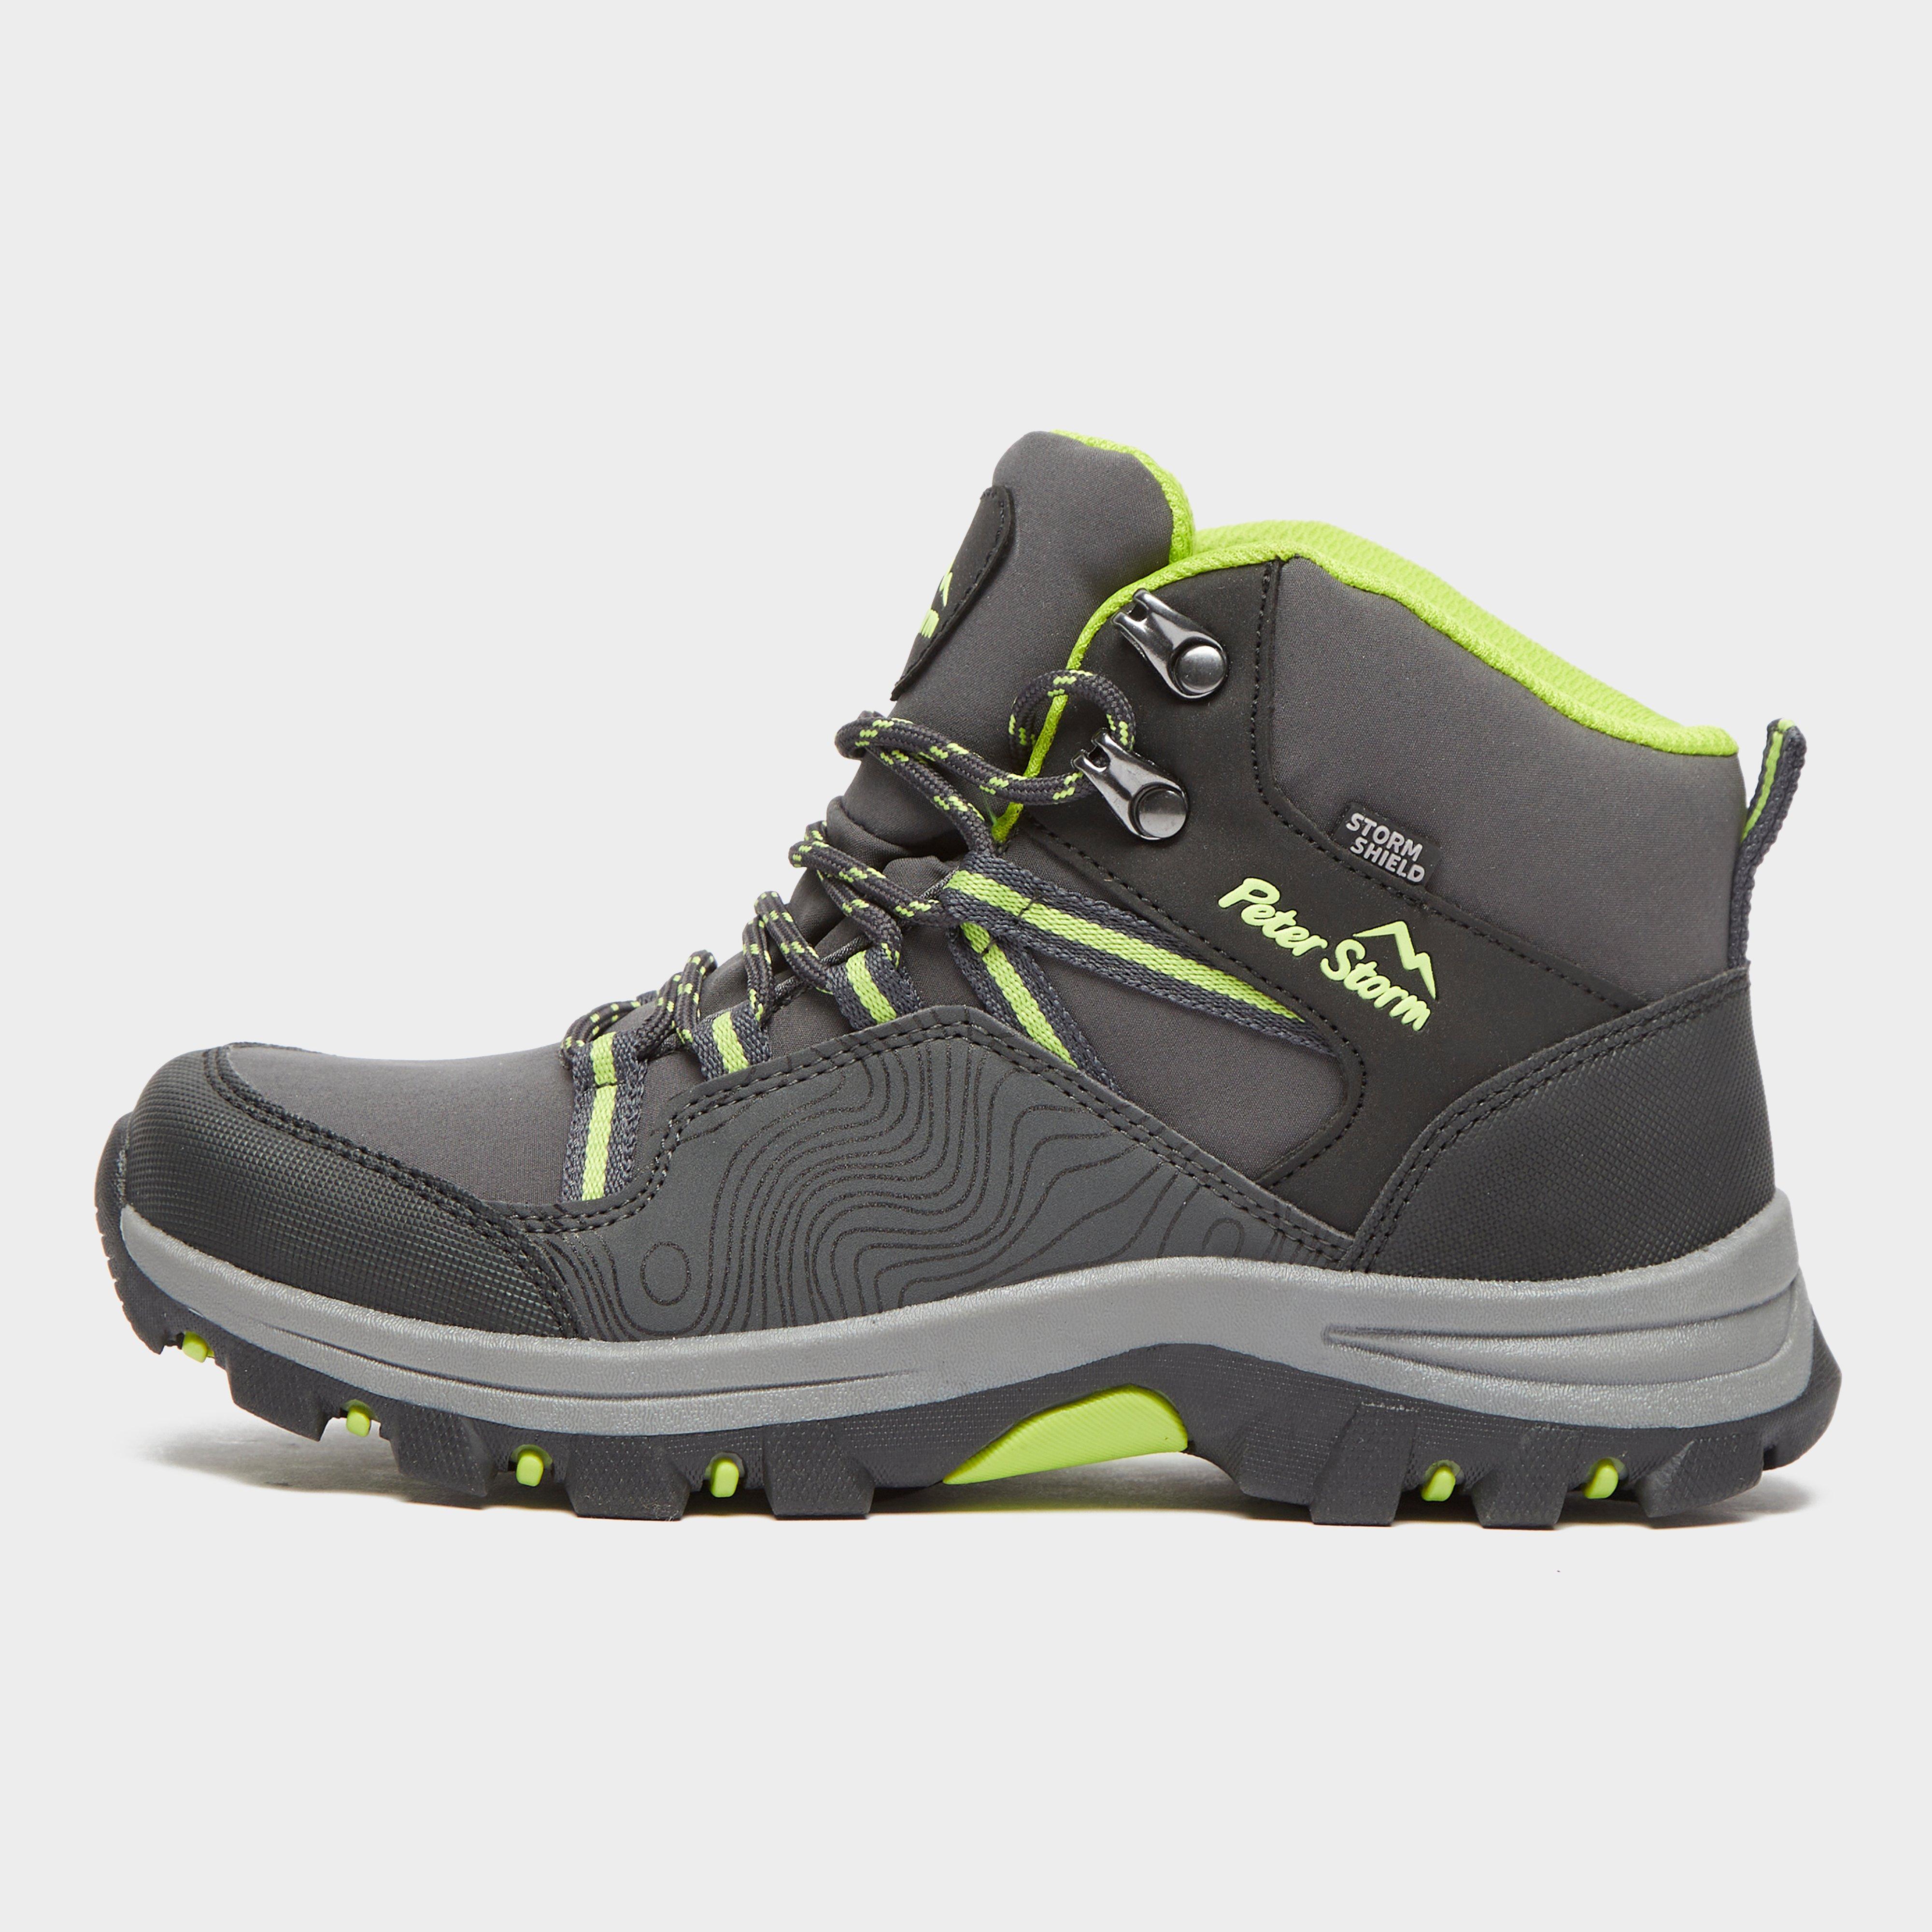 Peter Storm Kids Latitude Waterproof Walking Boots - Grey/green  Grey/green